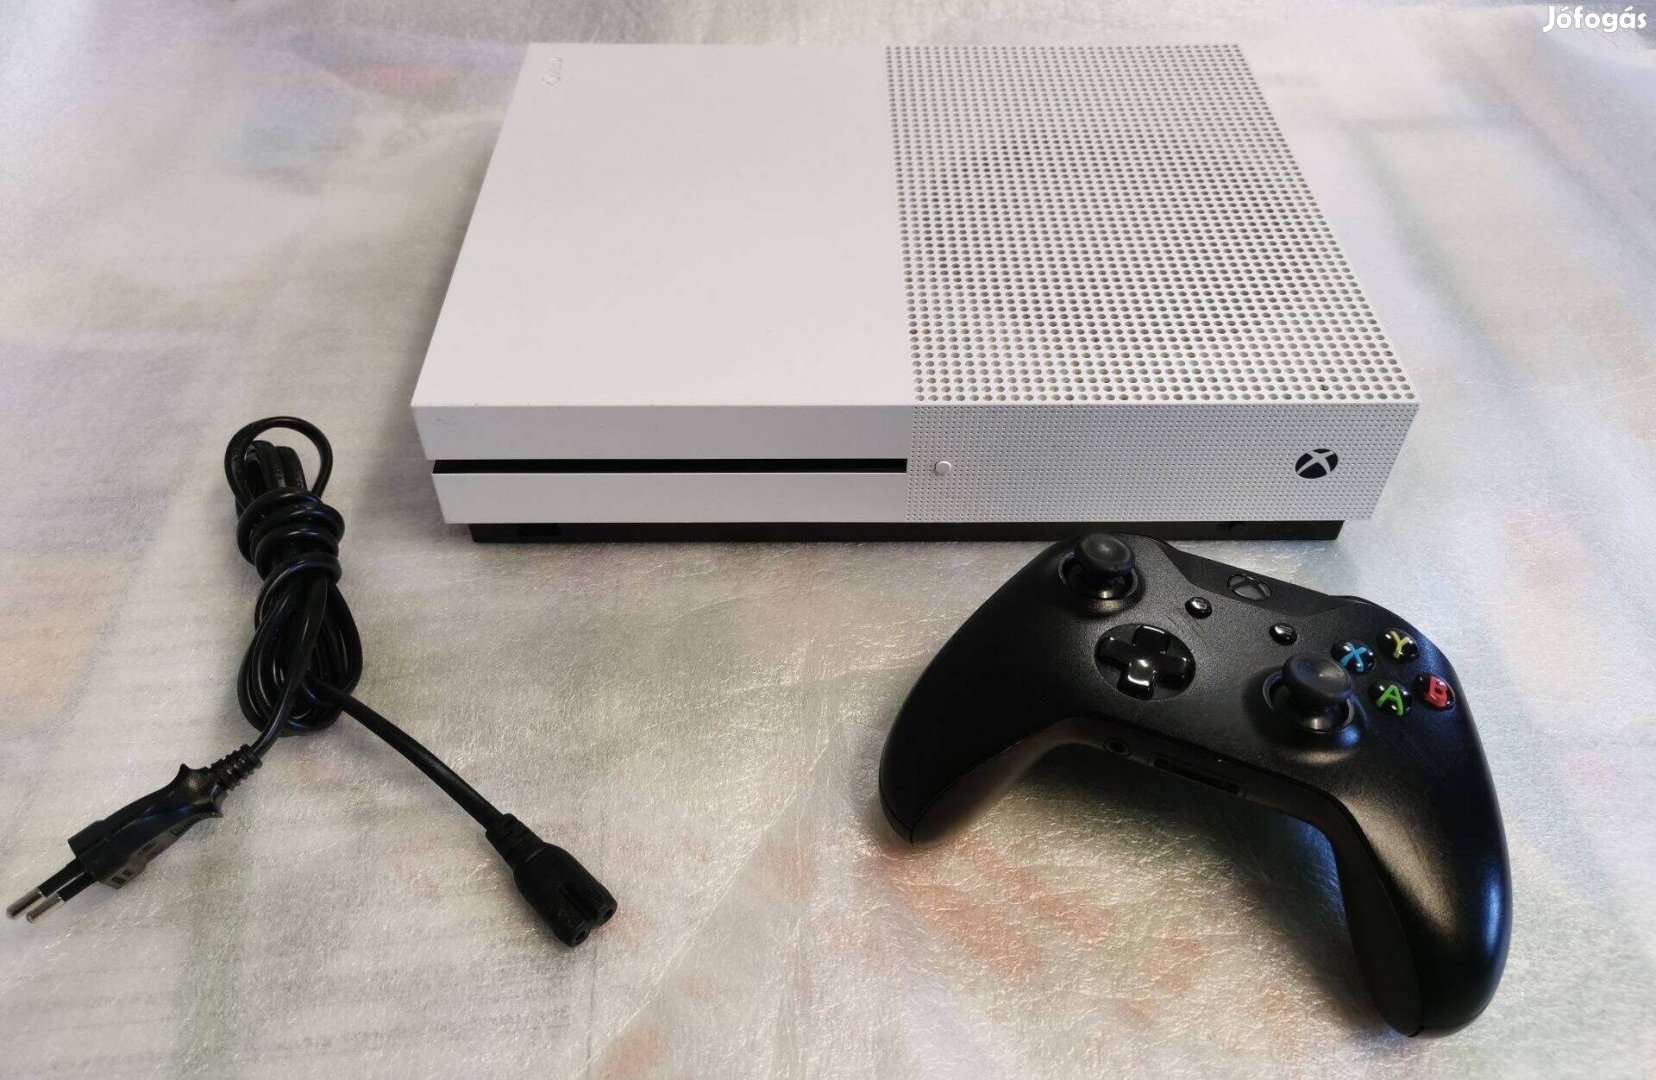 Eladva - Xbox ONE S 1Tb konzol megkímélt állapotban eladó !!!